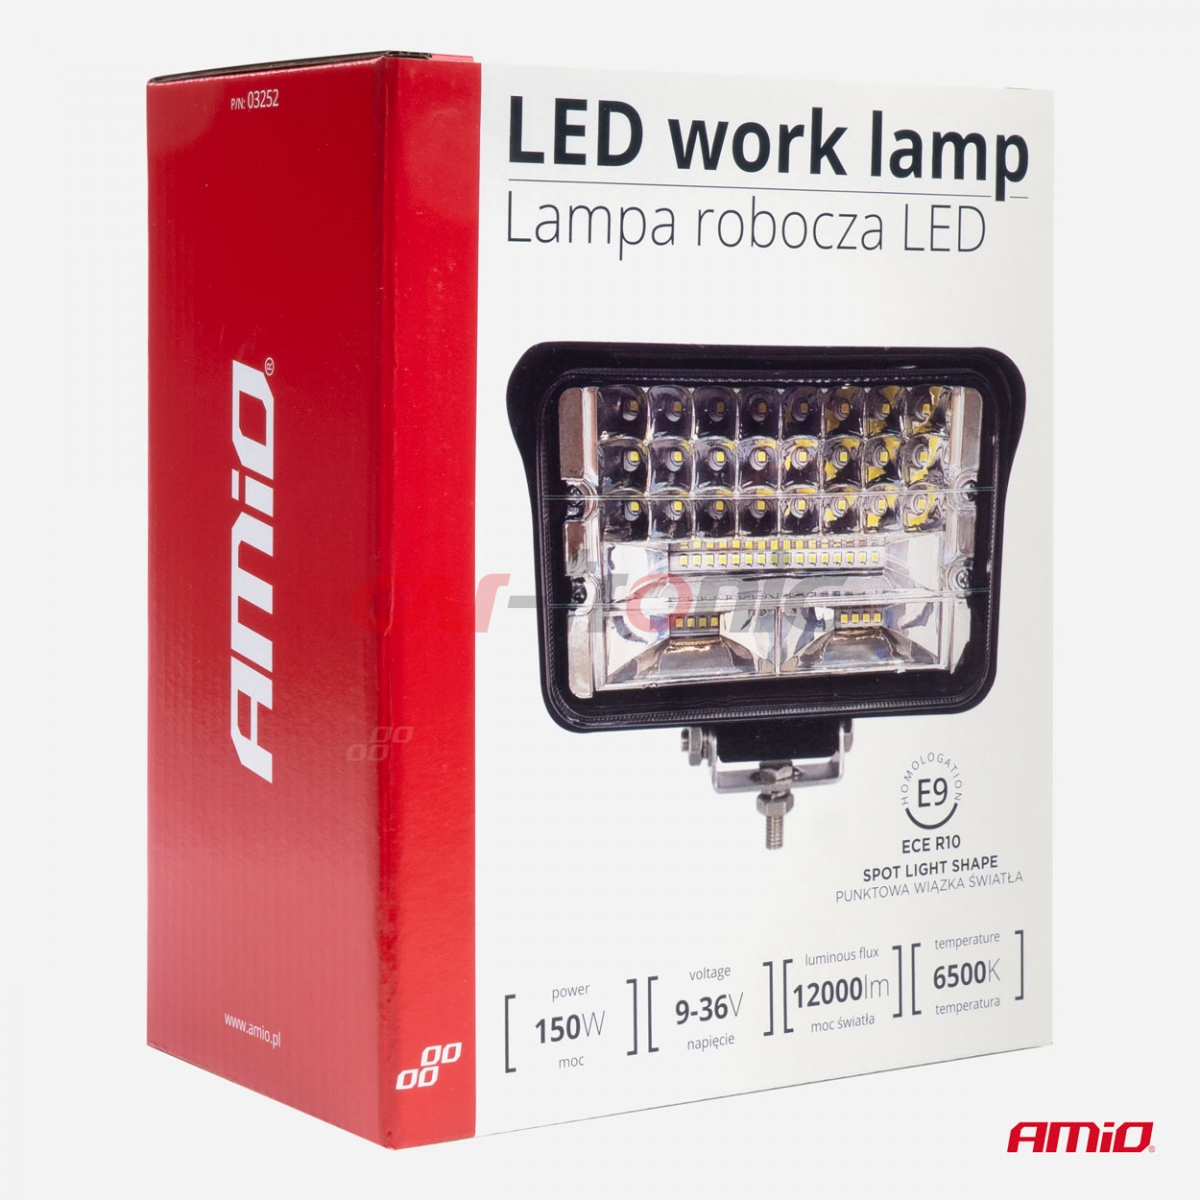 Lampa robocza halogen LED szperacz AWL41 50 LED AMIO-03252